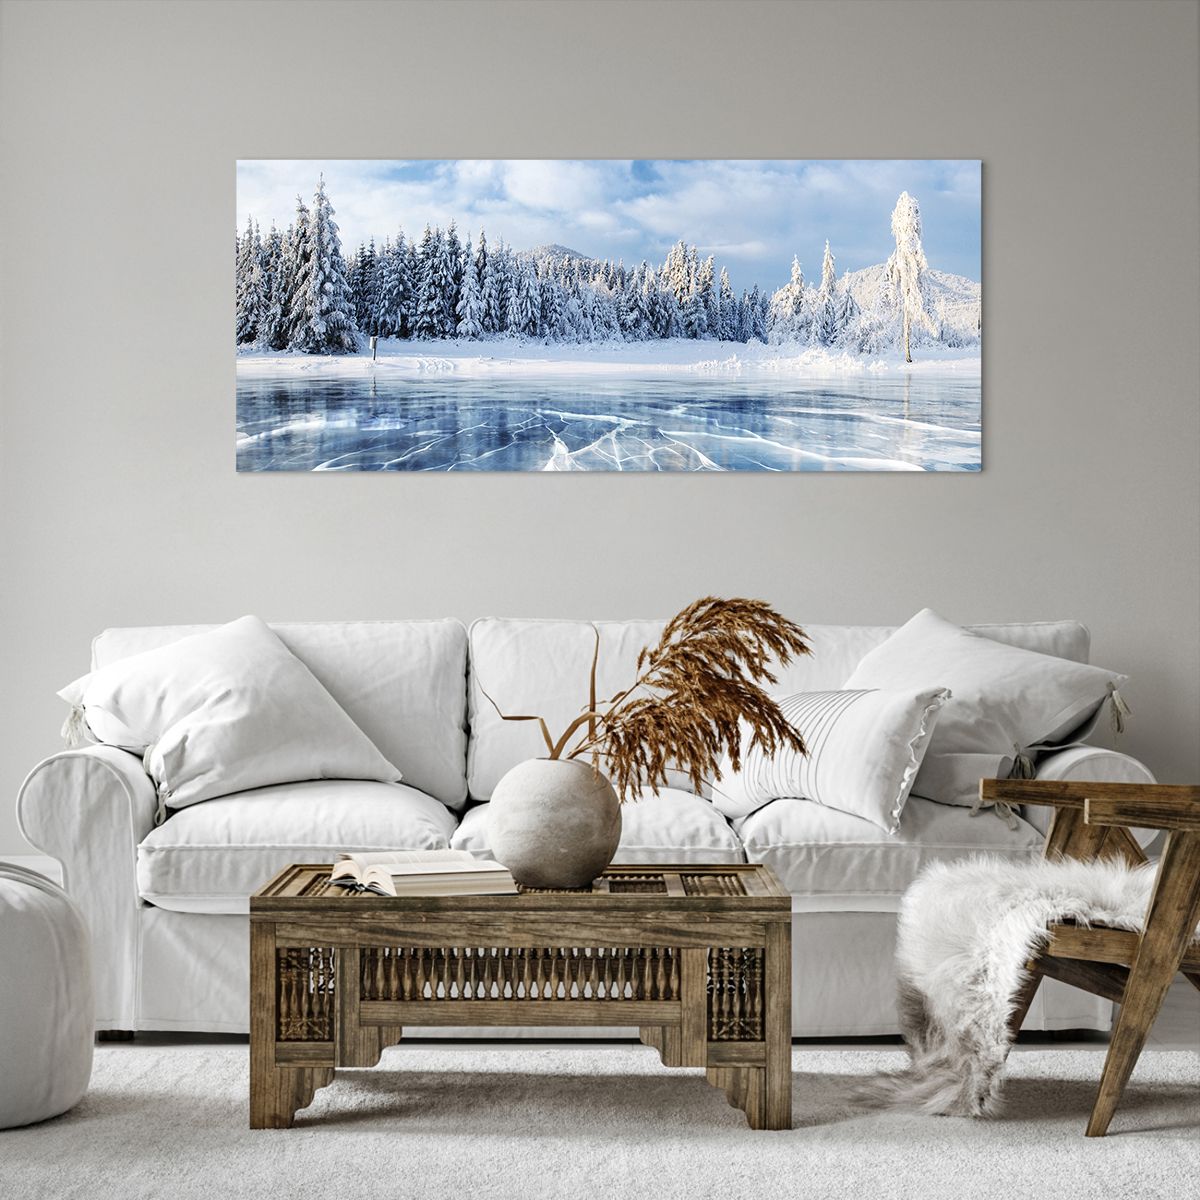 Obrazy na płótnie Krajobraz, Obrazy na płótnie Zima, Obrazy na płótnie Jezioro, Obrazy na płótnie Natura, Obrazy na płótnie Śnieg